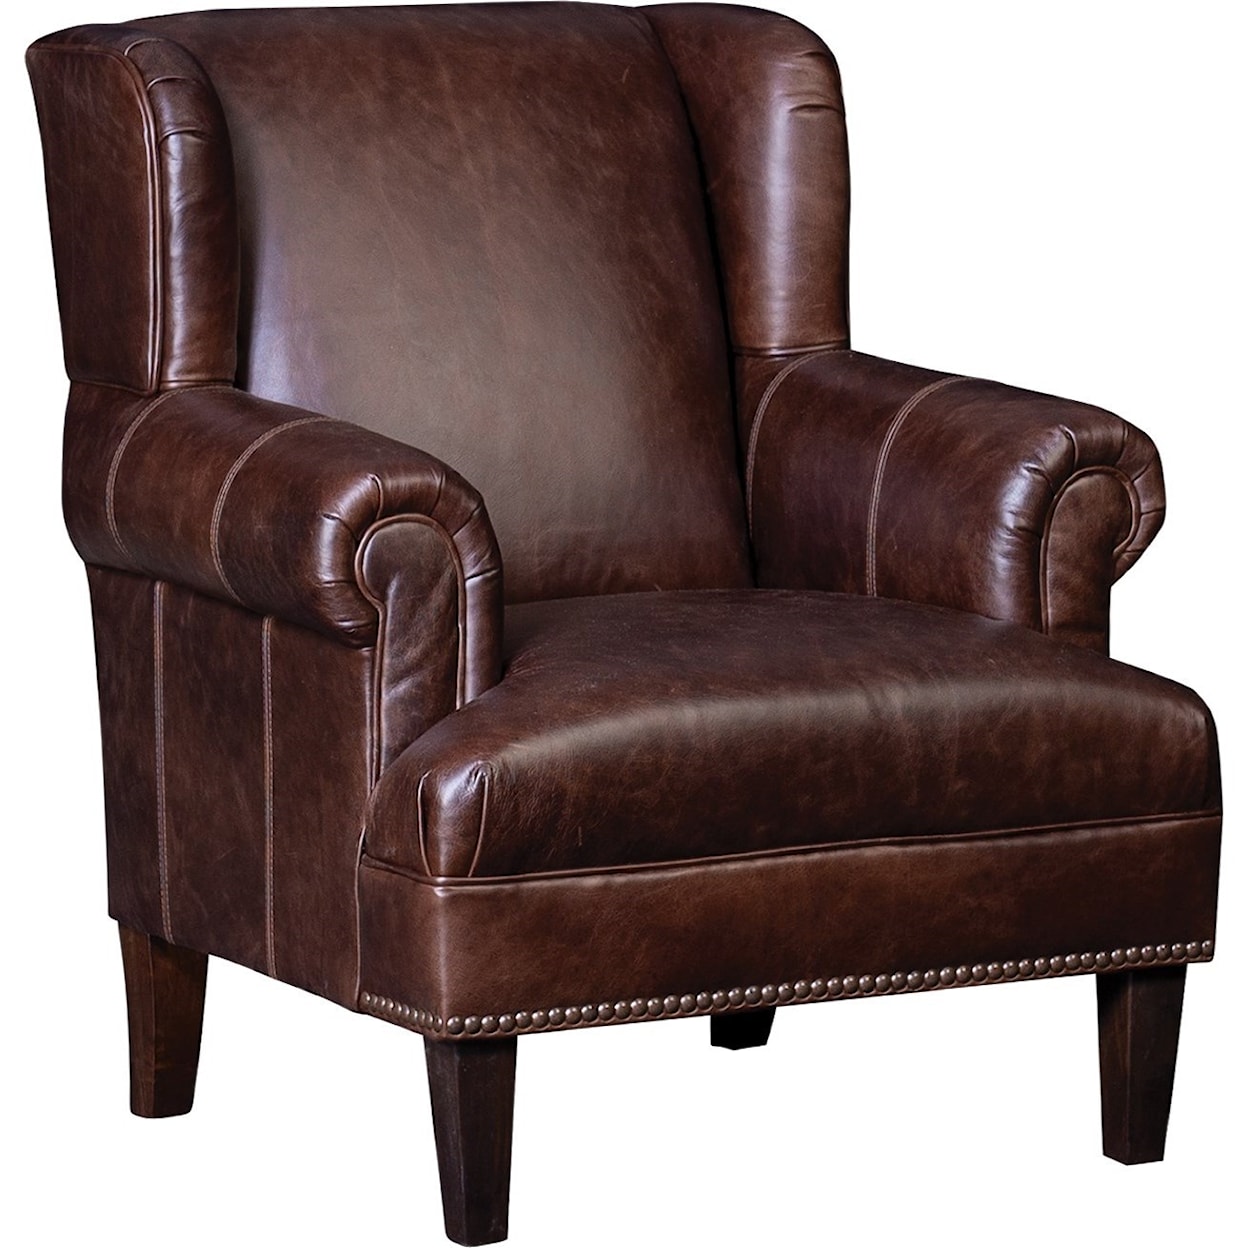 Mayo 6060 Chair